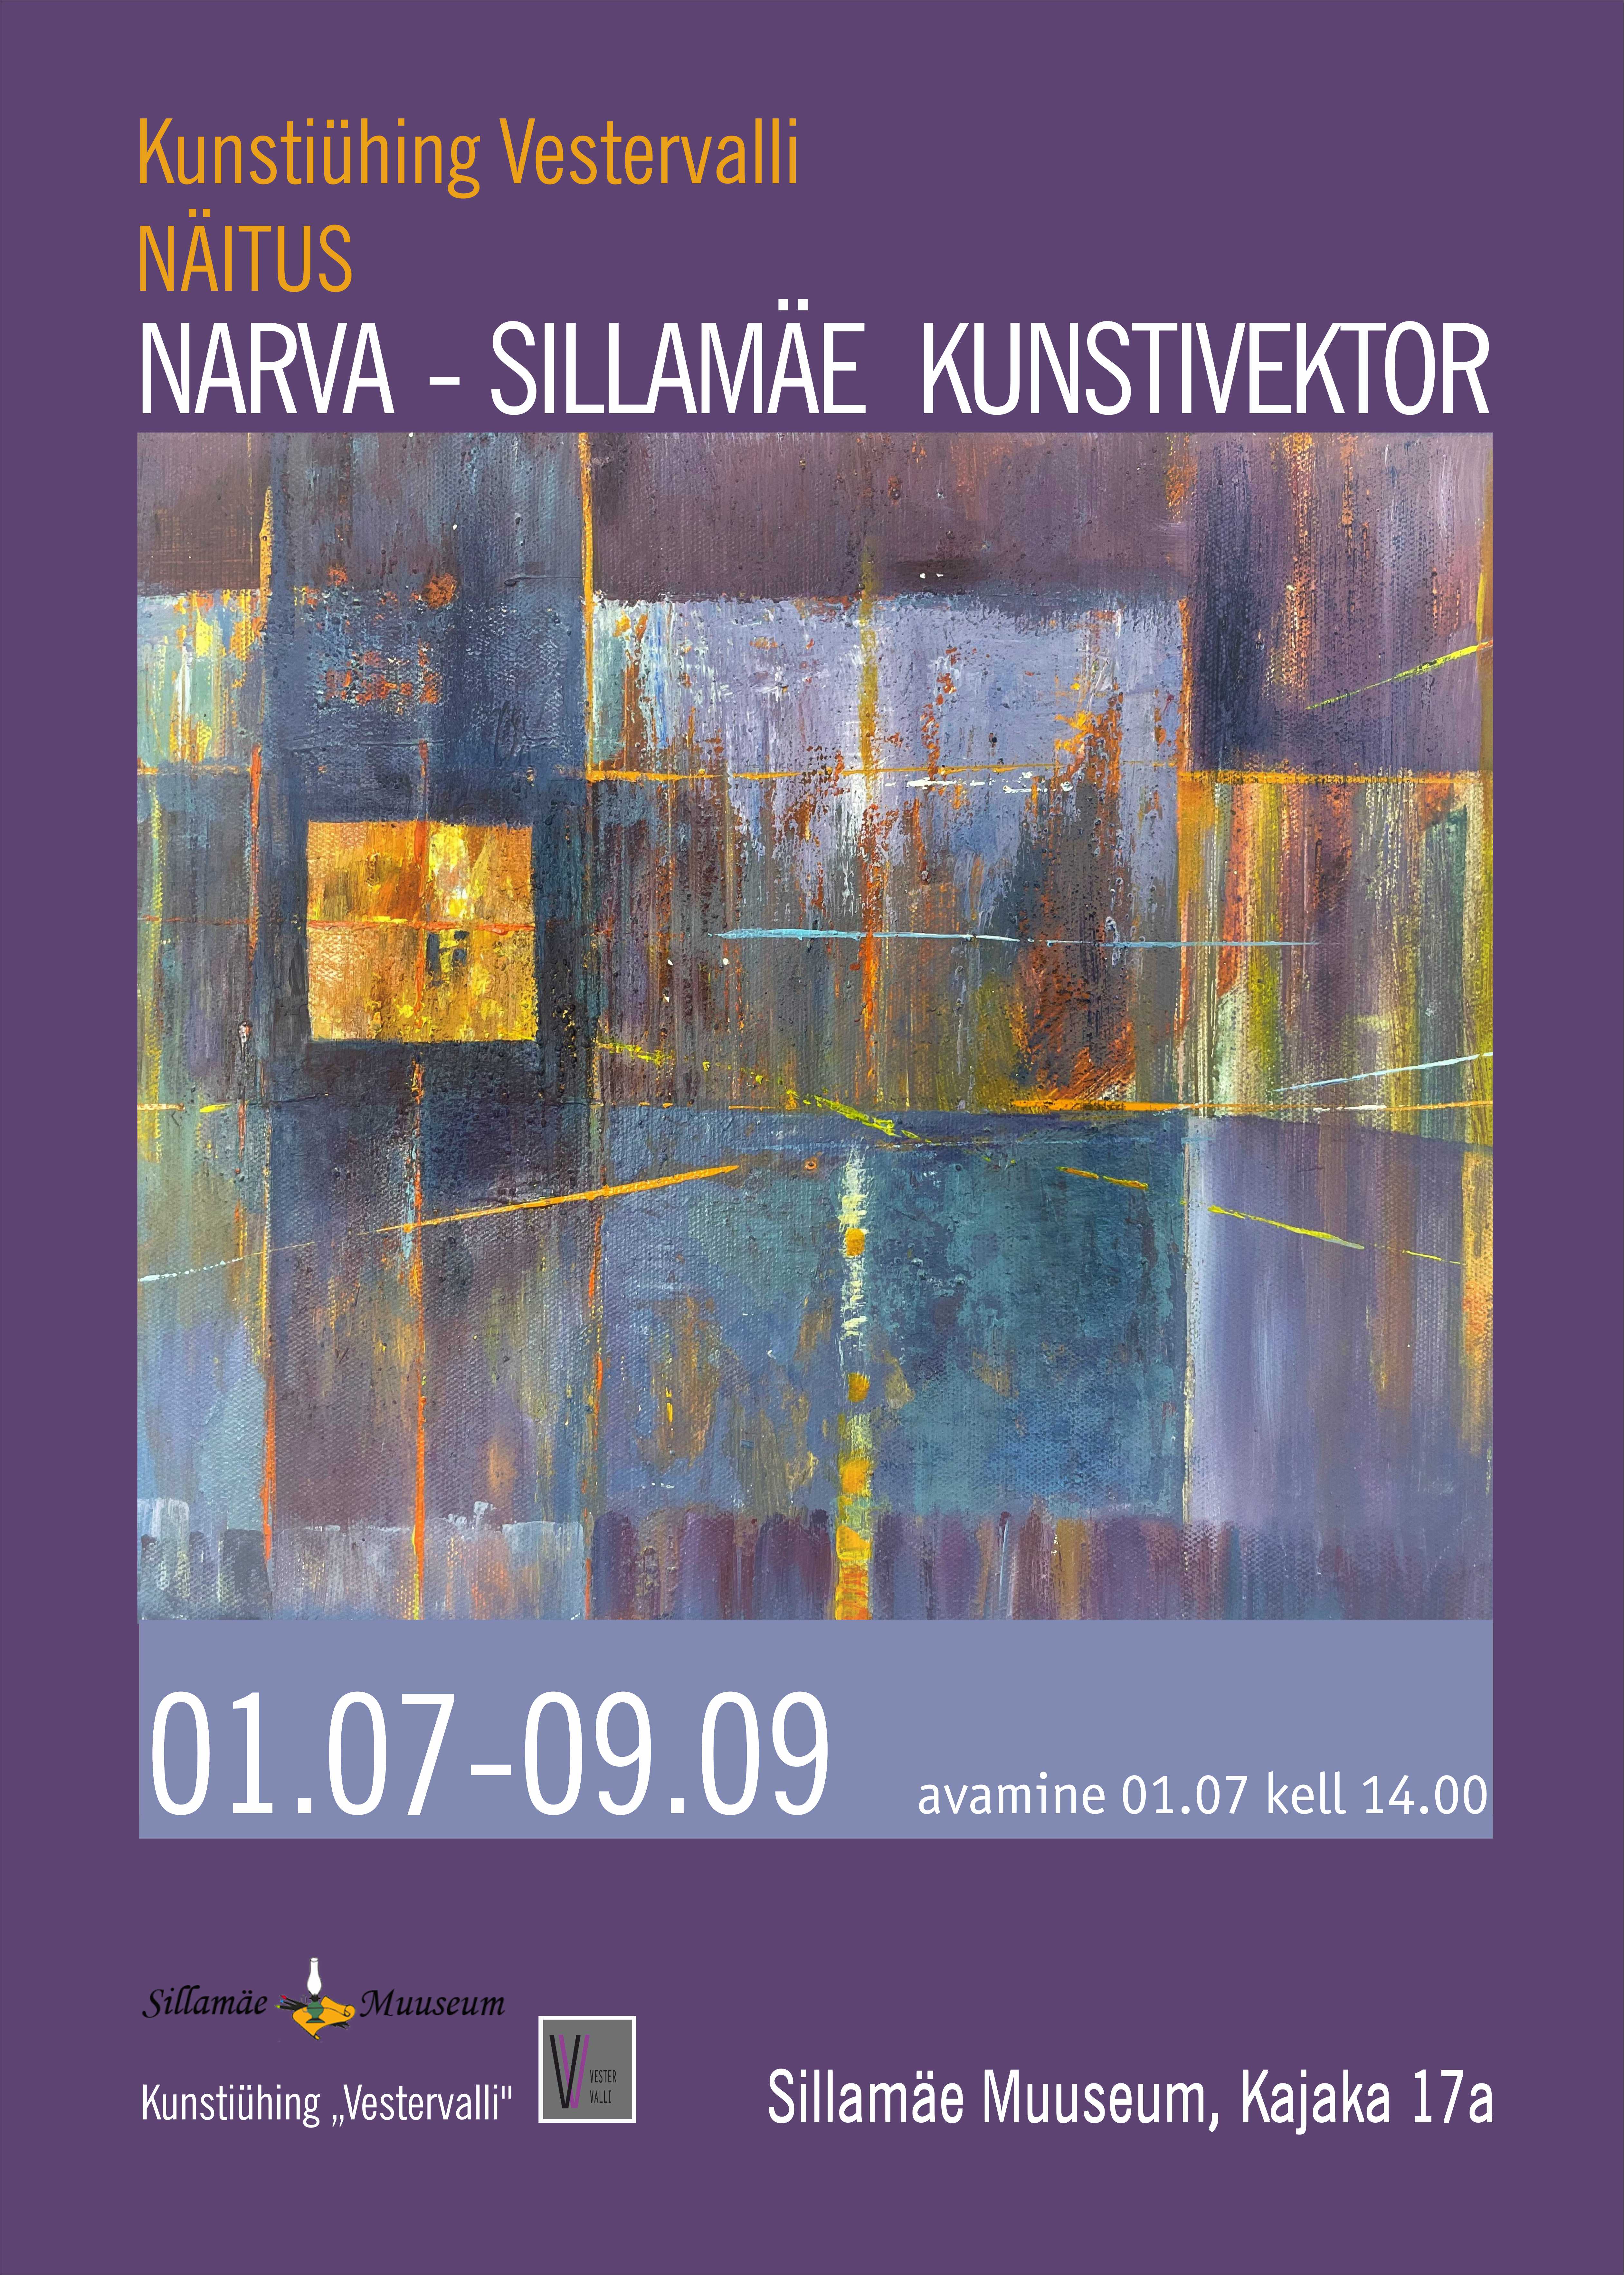 Narva - Sillamäe kunstivektor